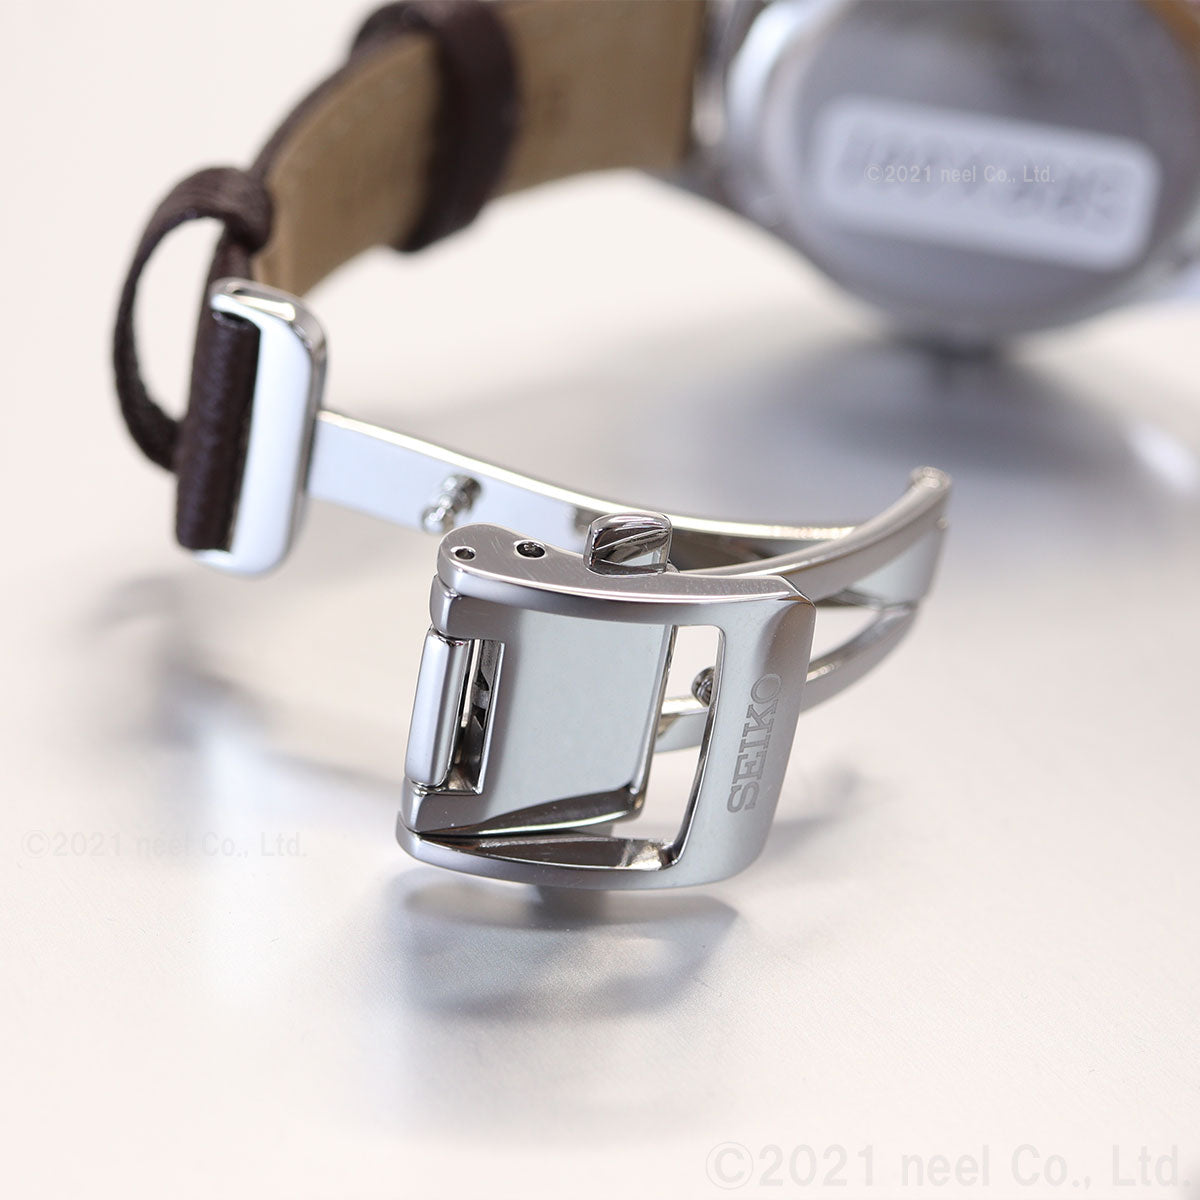 セイコー プレザージュ SEIKO PRESAGE 自動巻き メカニカル コアショップ専用 流通限定モデル 腕時計 レディース SRRX001 プレステージライン 琺瑯ダイヤル